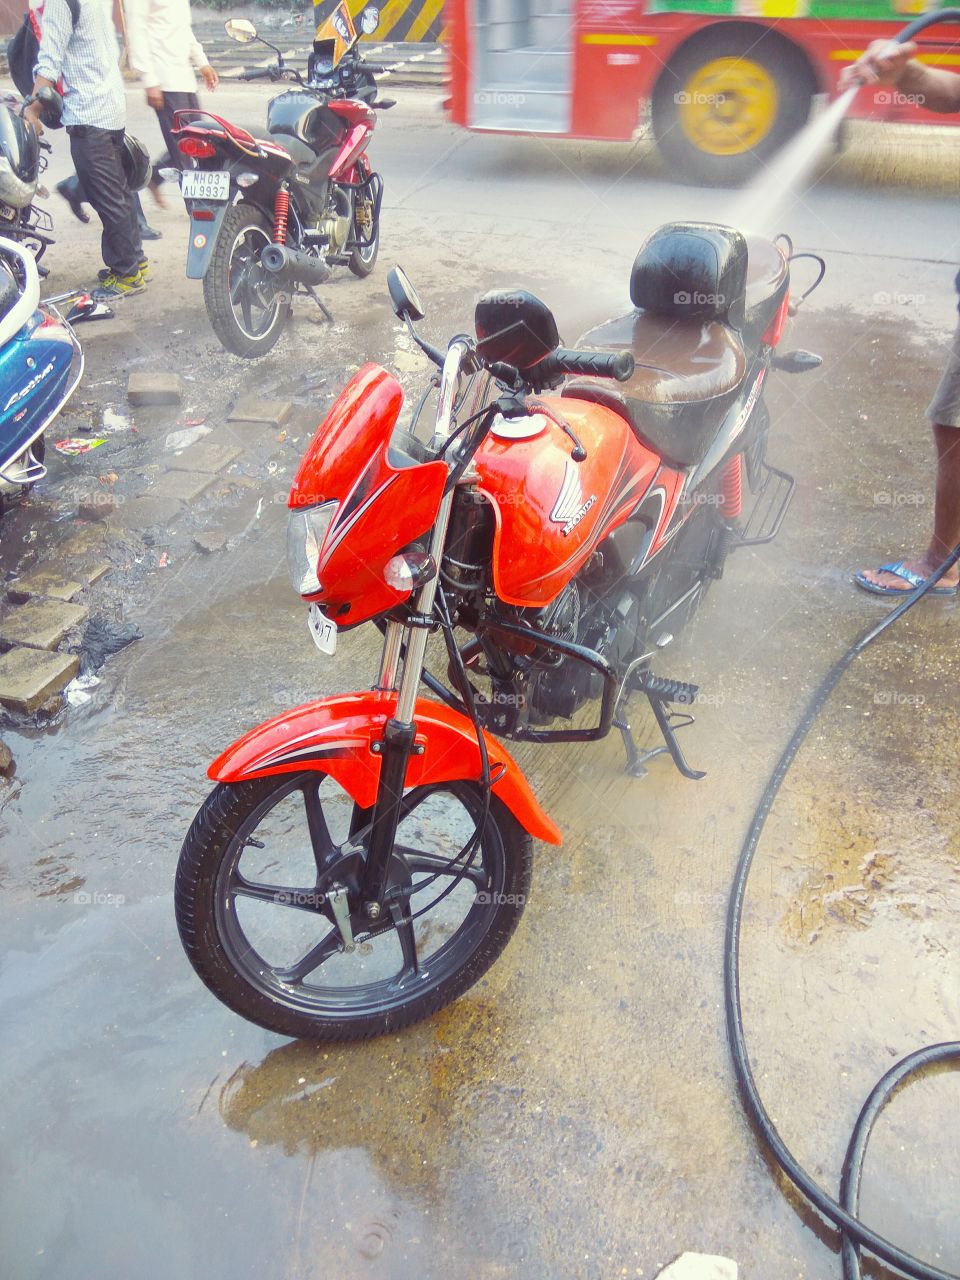 Motorcycle washing